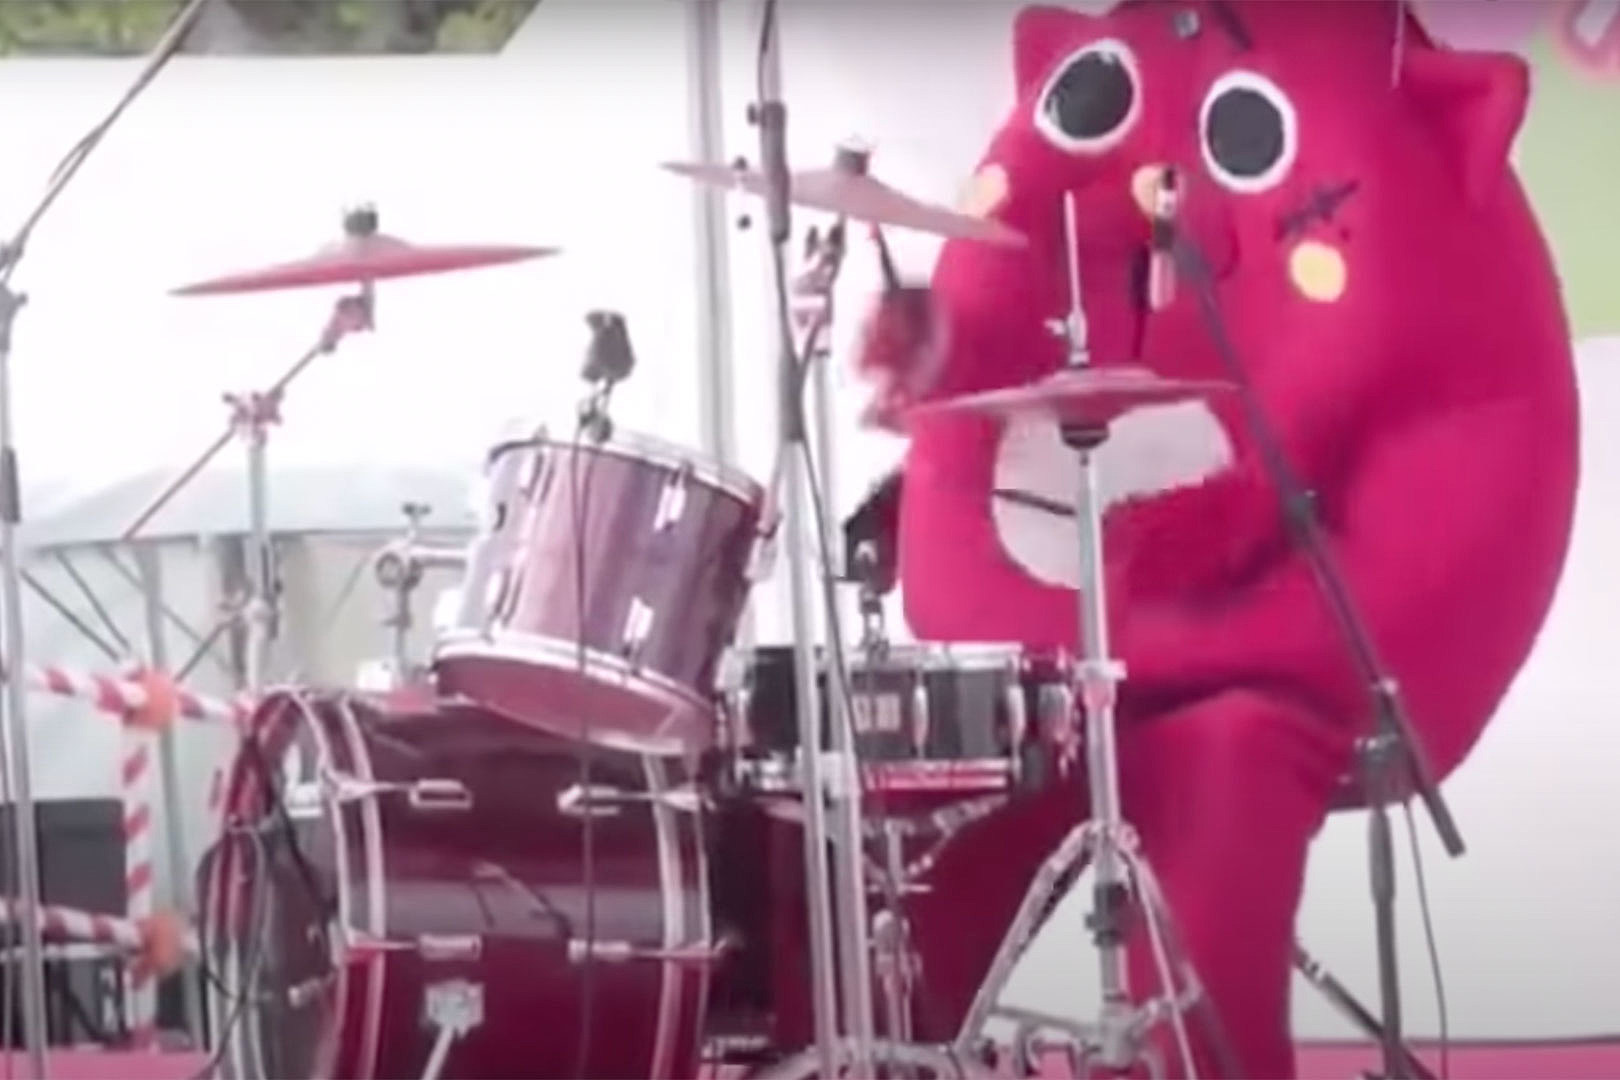 Drummer in Animal Costume Brings Fury at Kids Concert